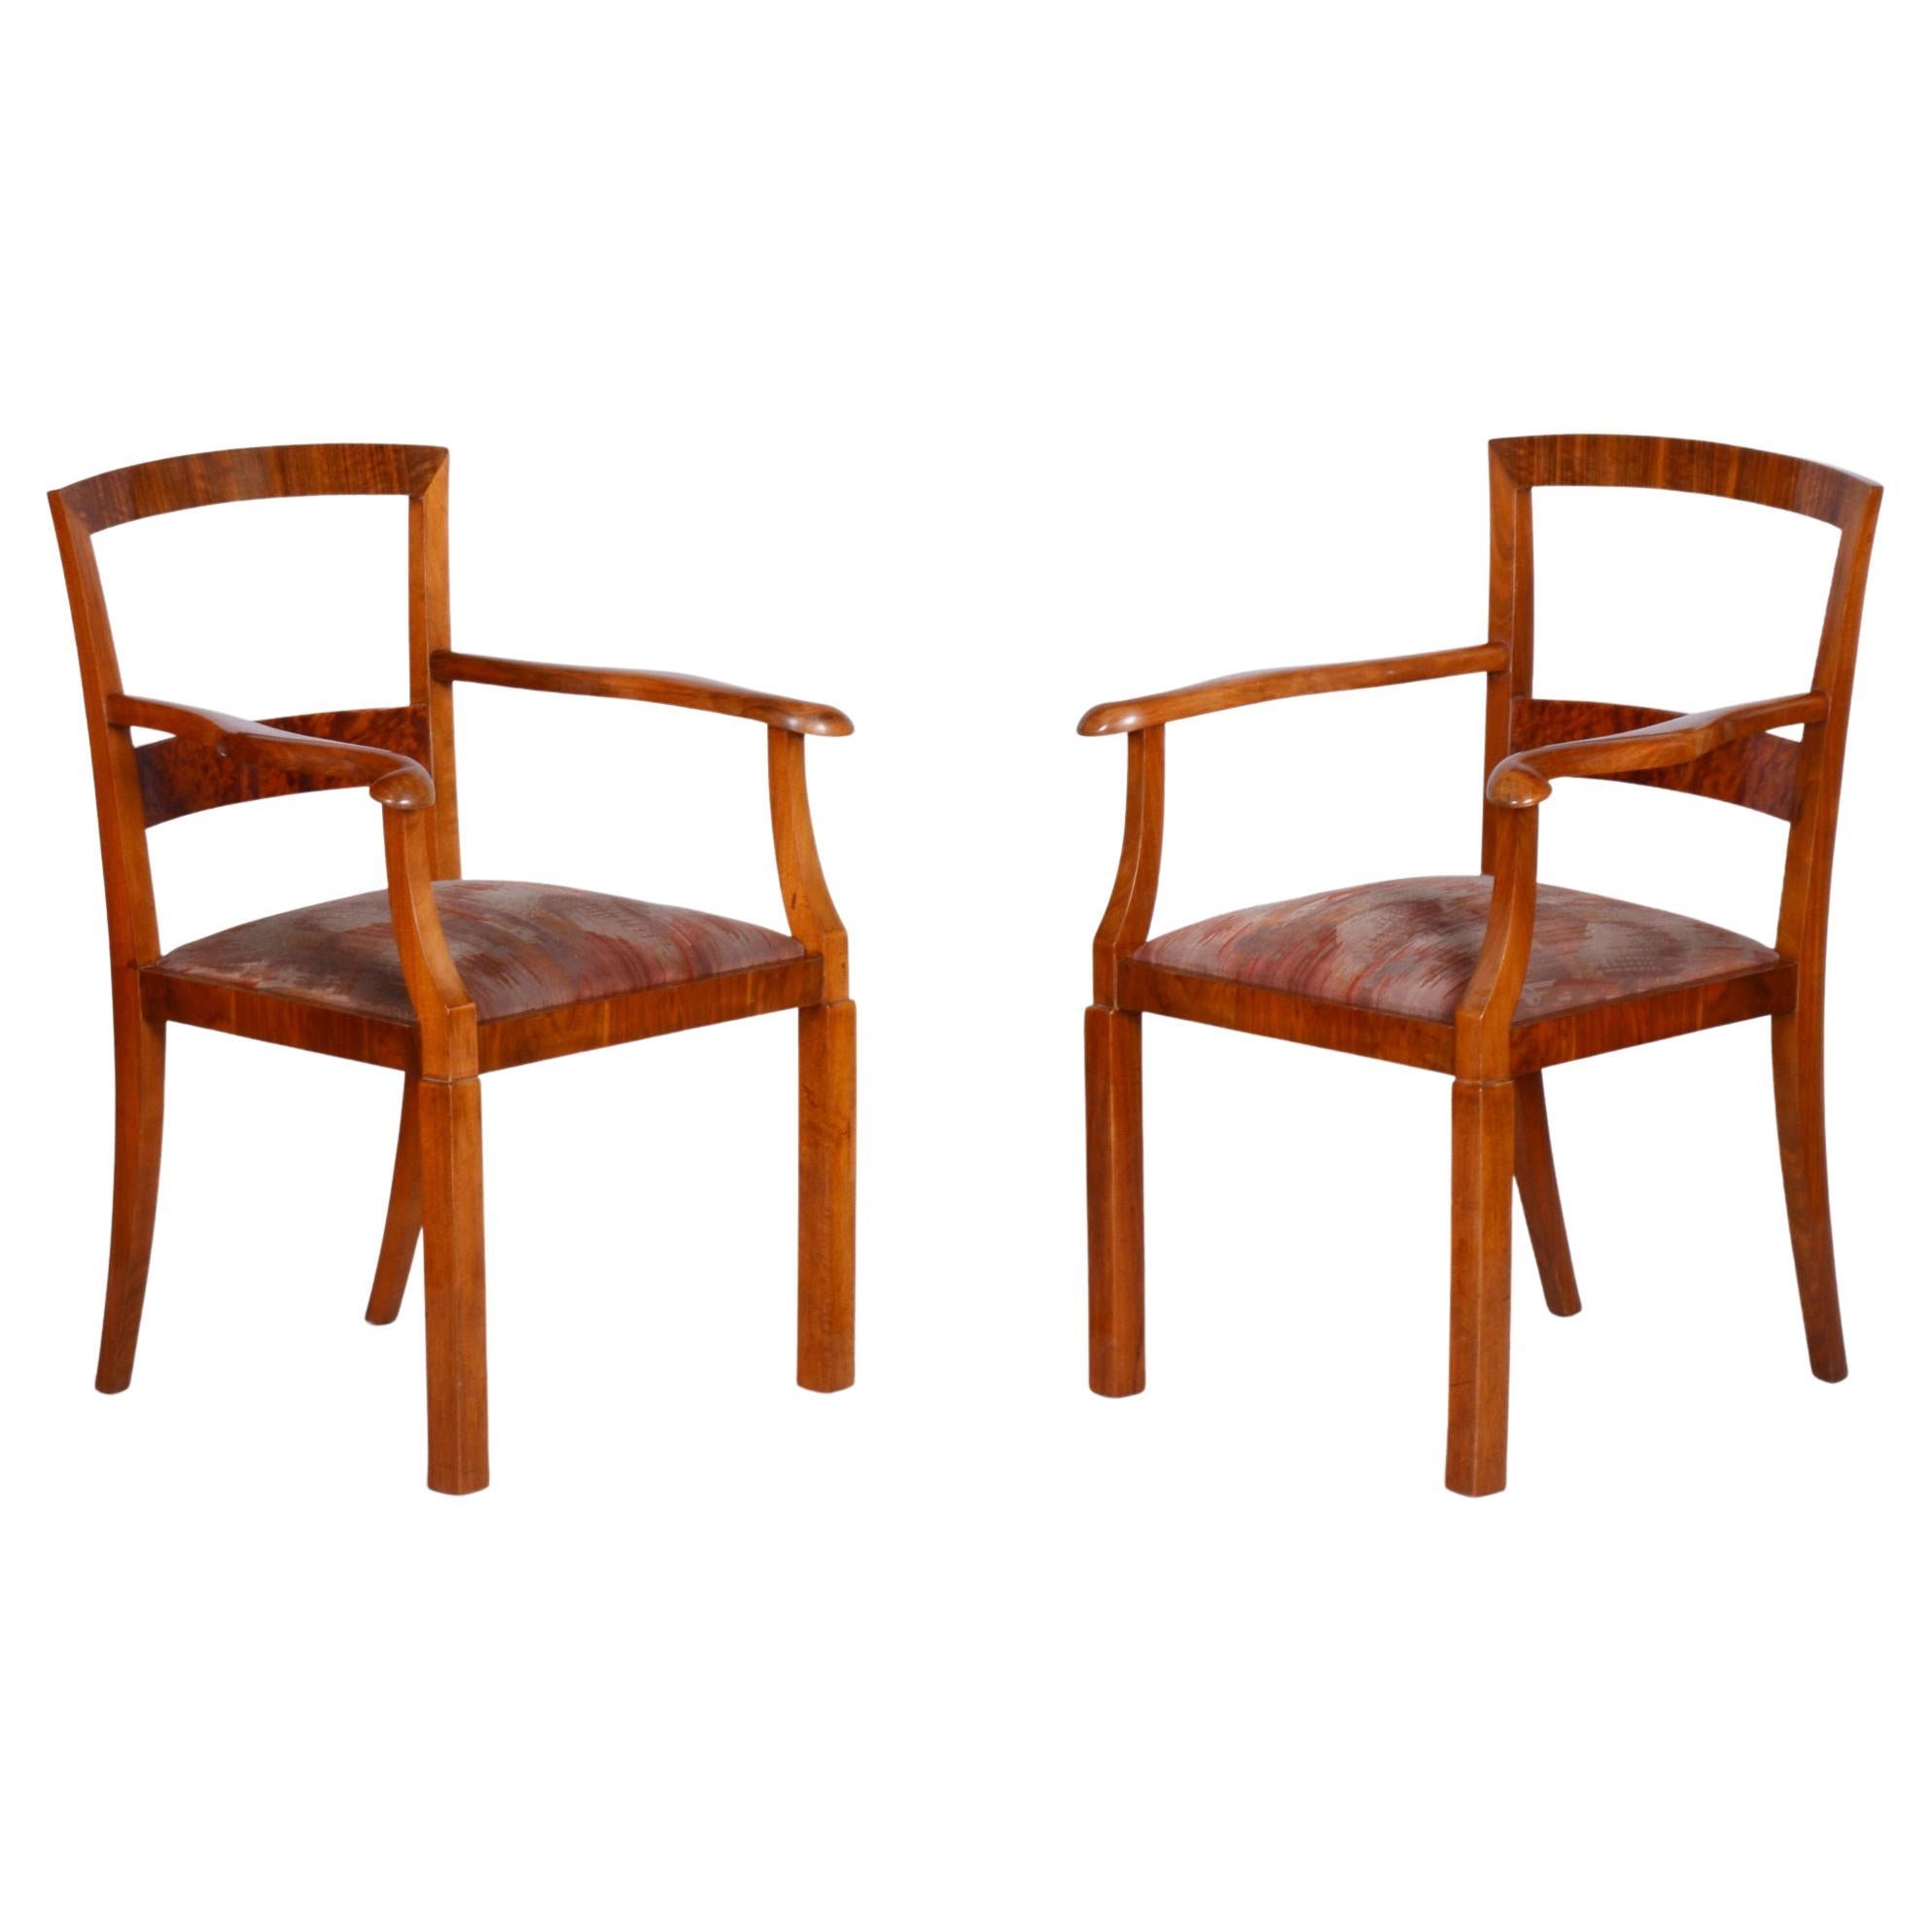 Paar braune ArtDeco-Sessel aus Buche, 1920er Jahre, original gepolstert